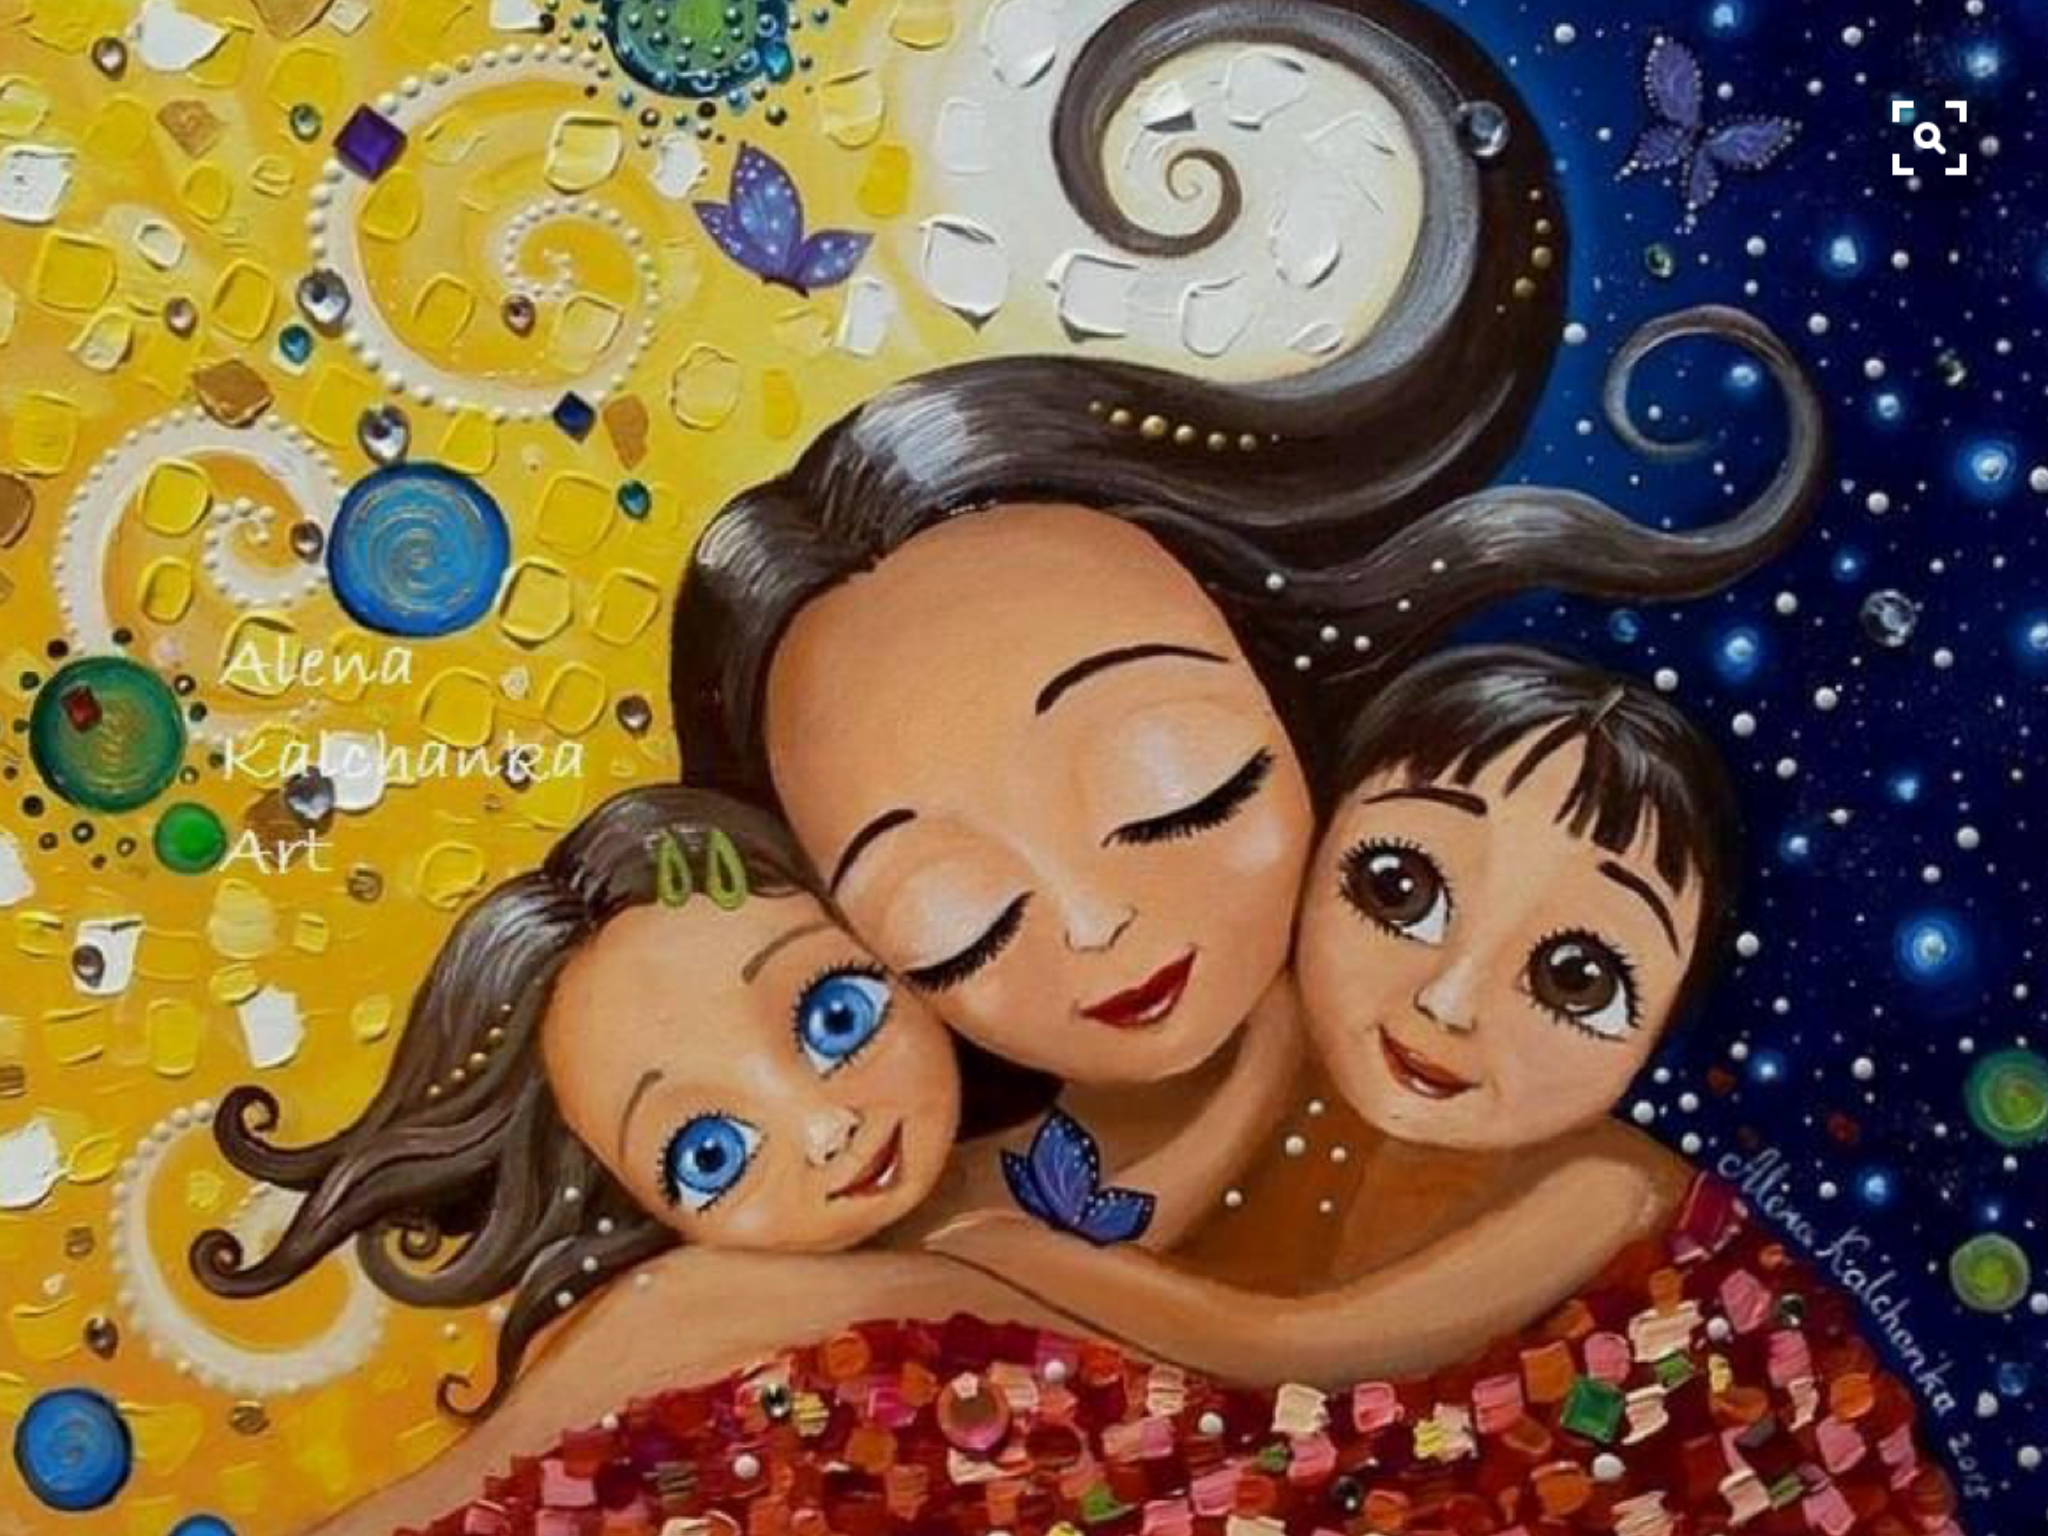 Claudia Tremblay картины мать и дитя. Мама с двумя детьми Рисованные. Мама и ребенок иллюстрация. Мама с ребенком рисунок. Двойное материнство